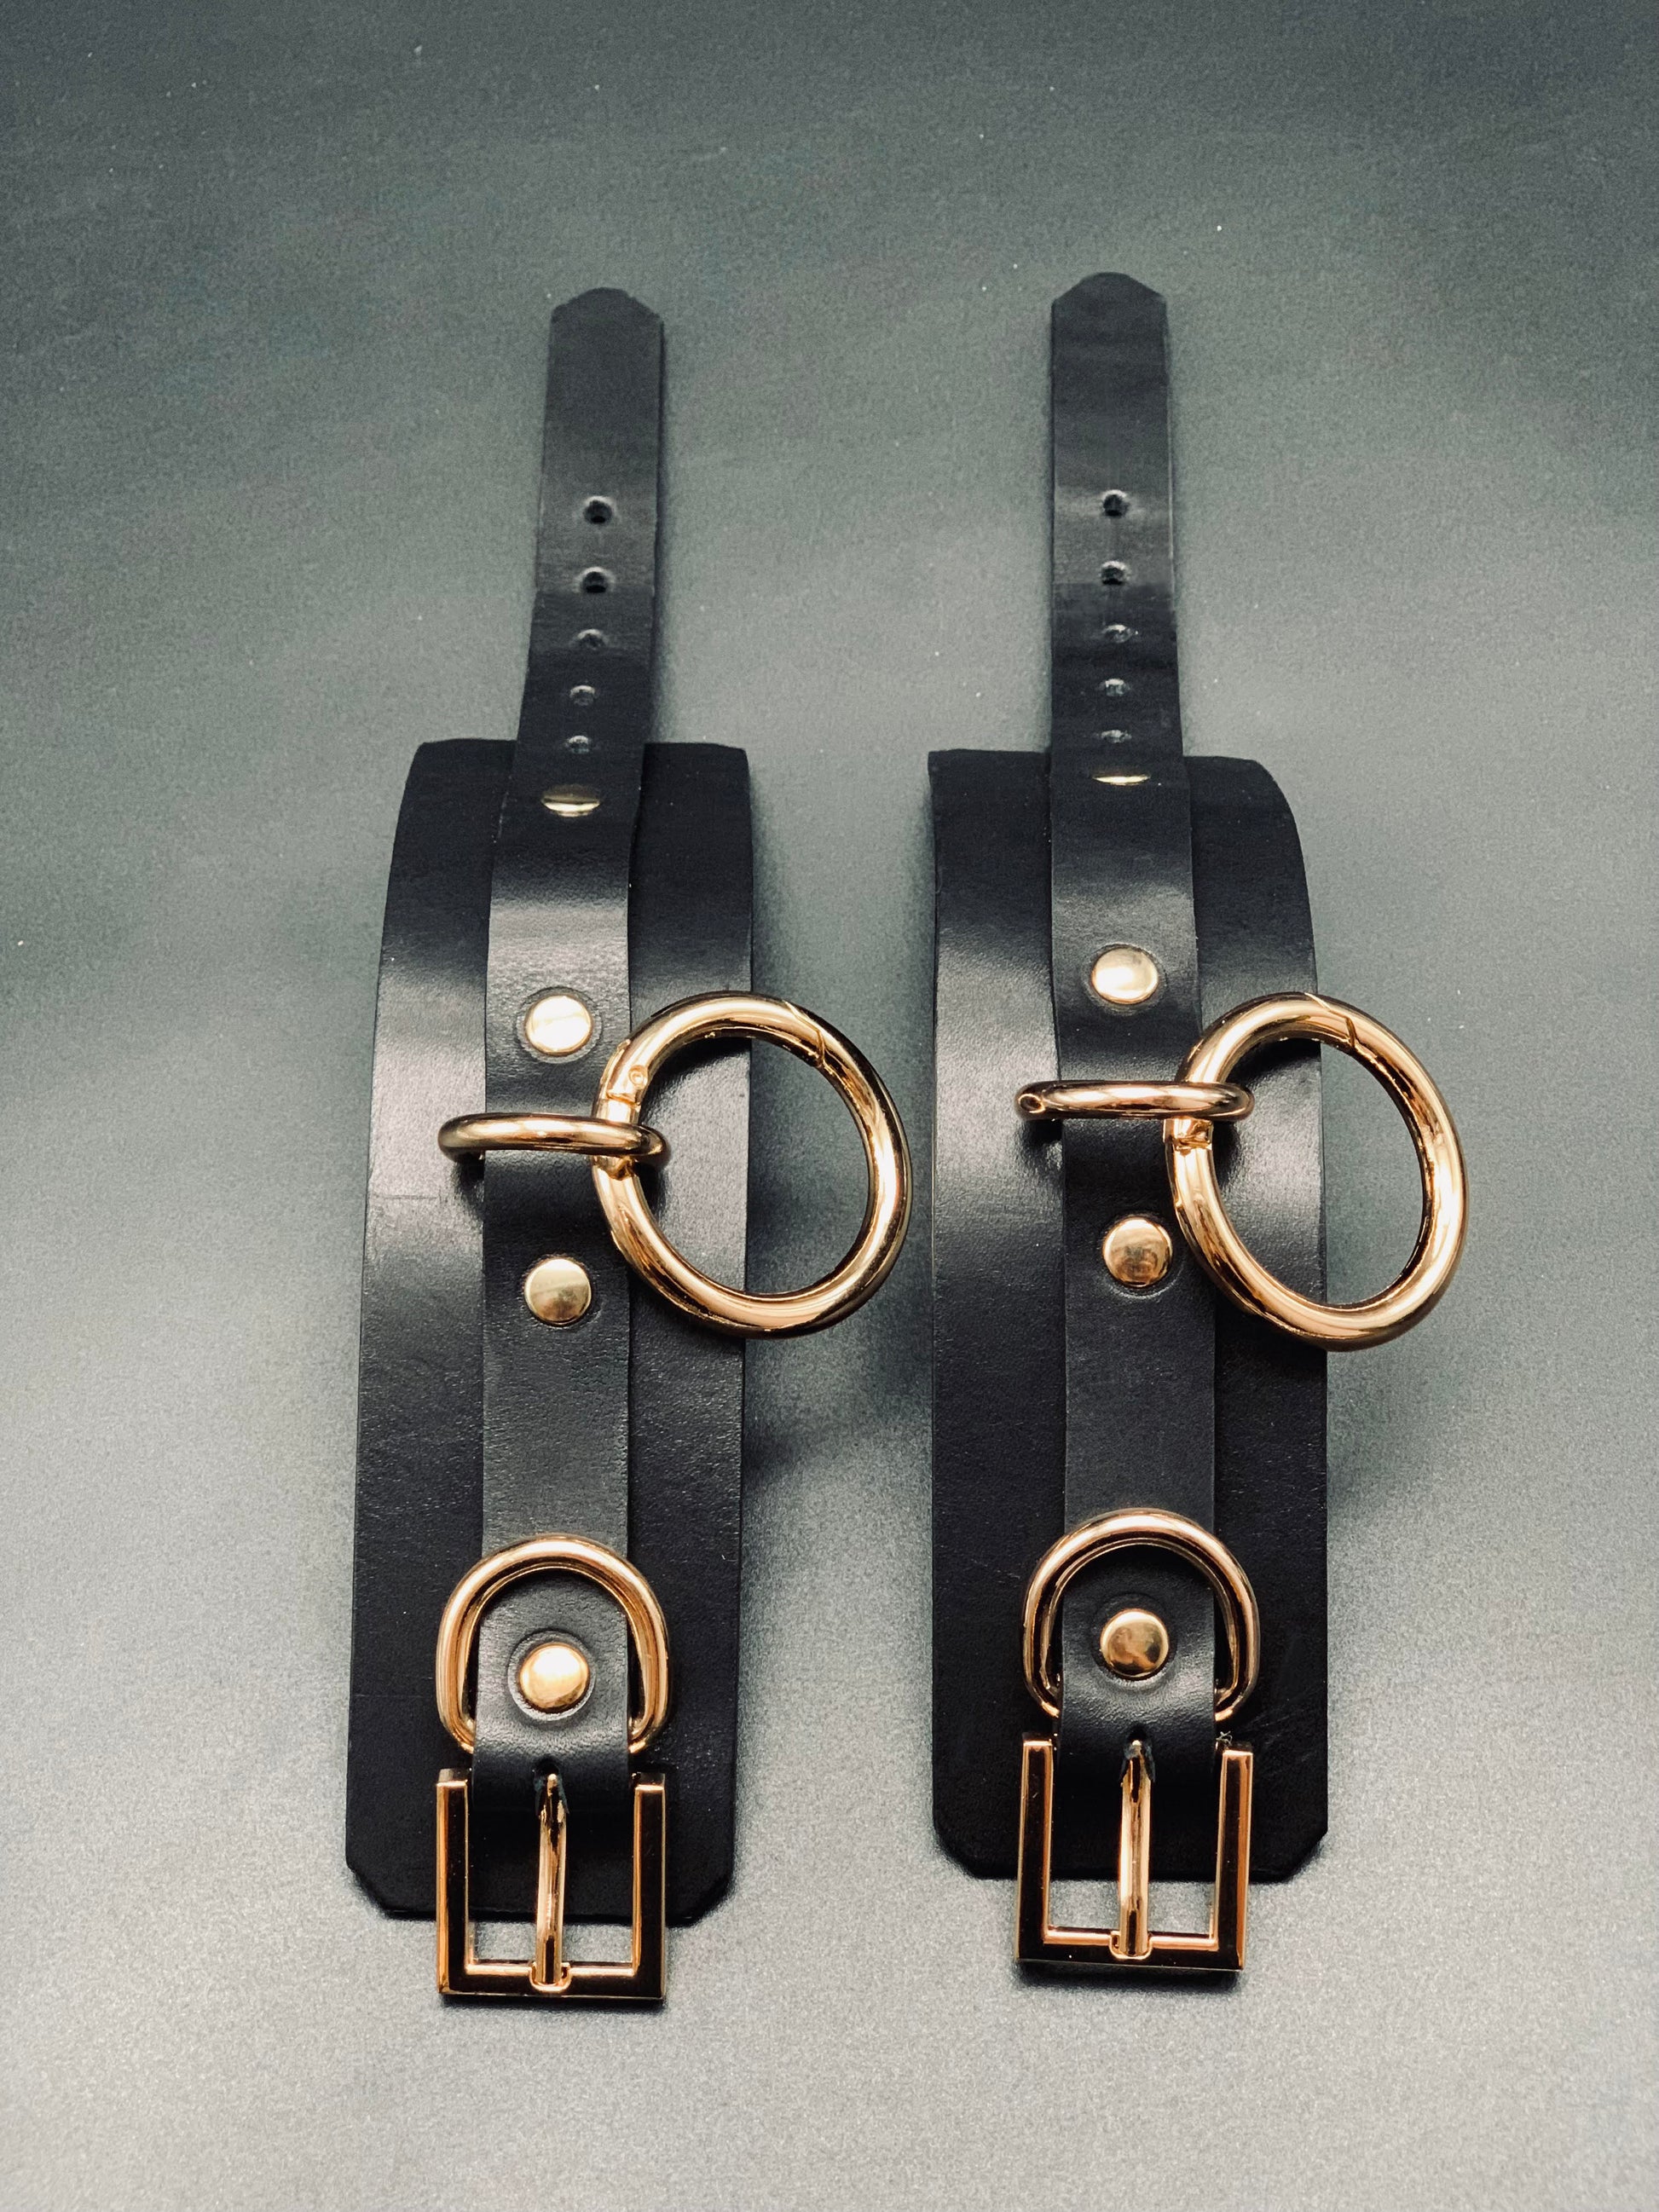 bondage cuffs